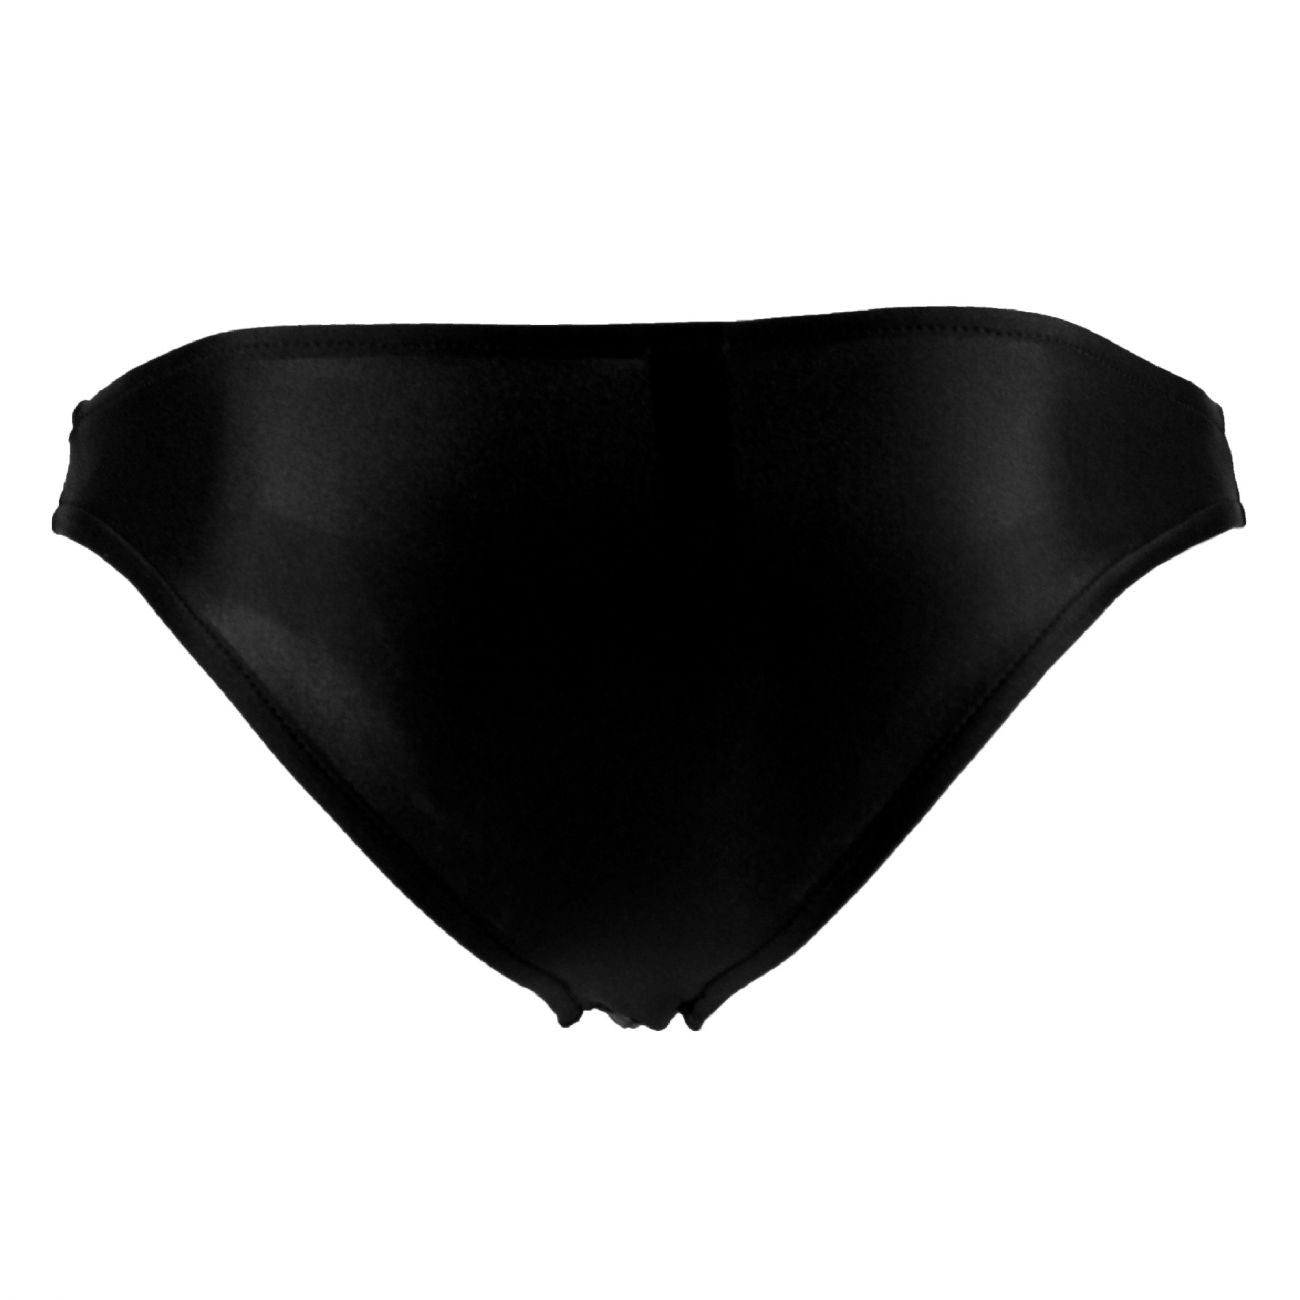 Male Power PAK871 Euro Male Spandex Brazilian Pouch Bikini Black